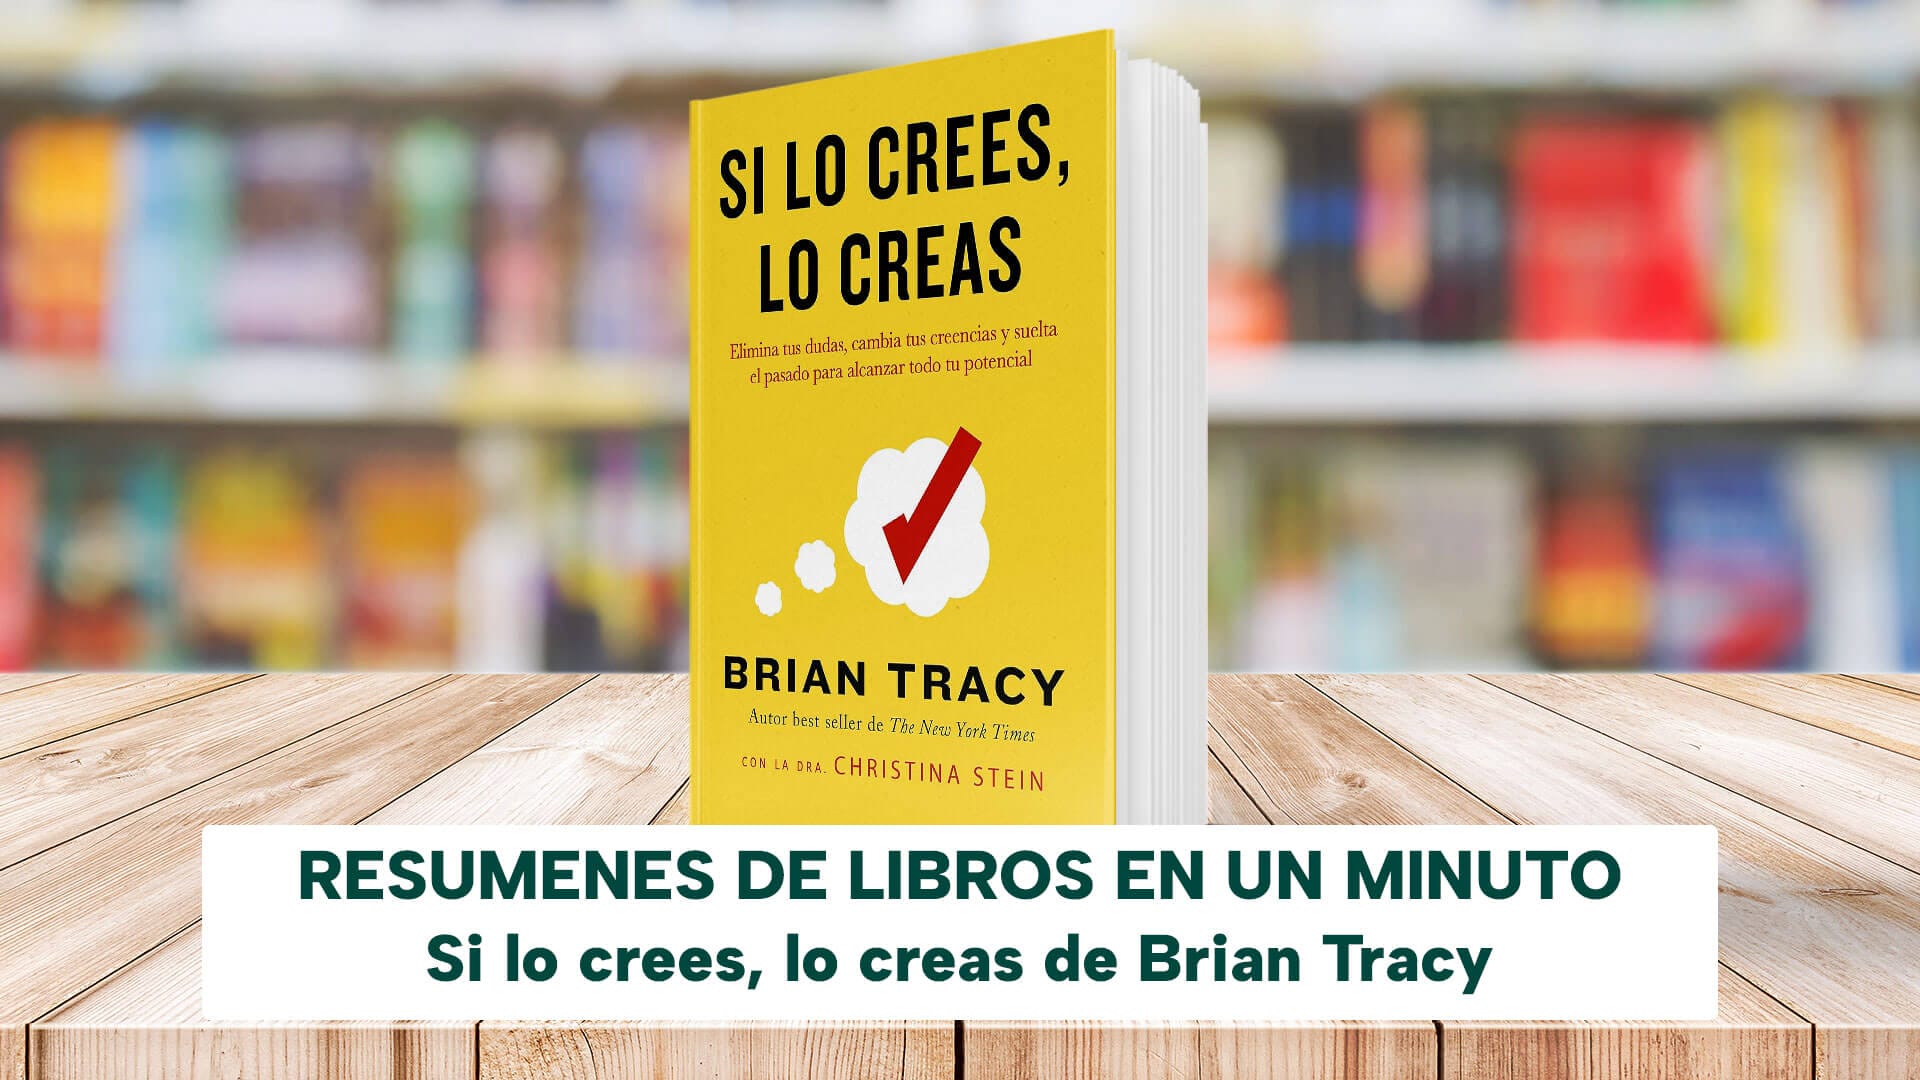 Si Lo Crees, Lo Creas Brian Tracy